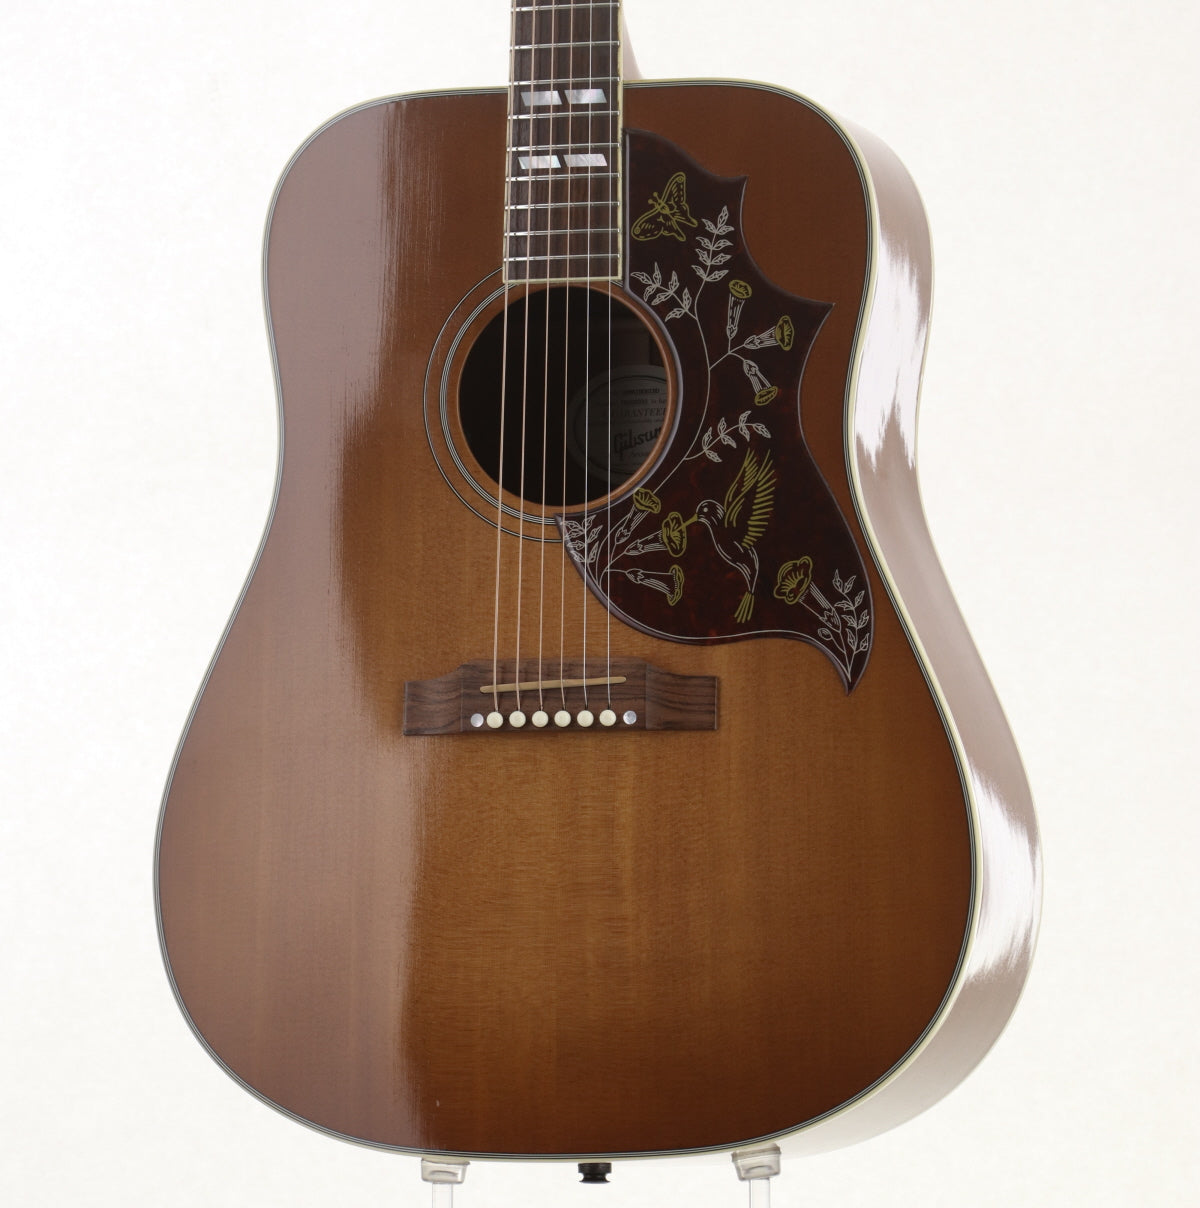 [SN 10305035] USED Gibson / Hummingbird Heritage Cherry Sunburst 2015 [09]